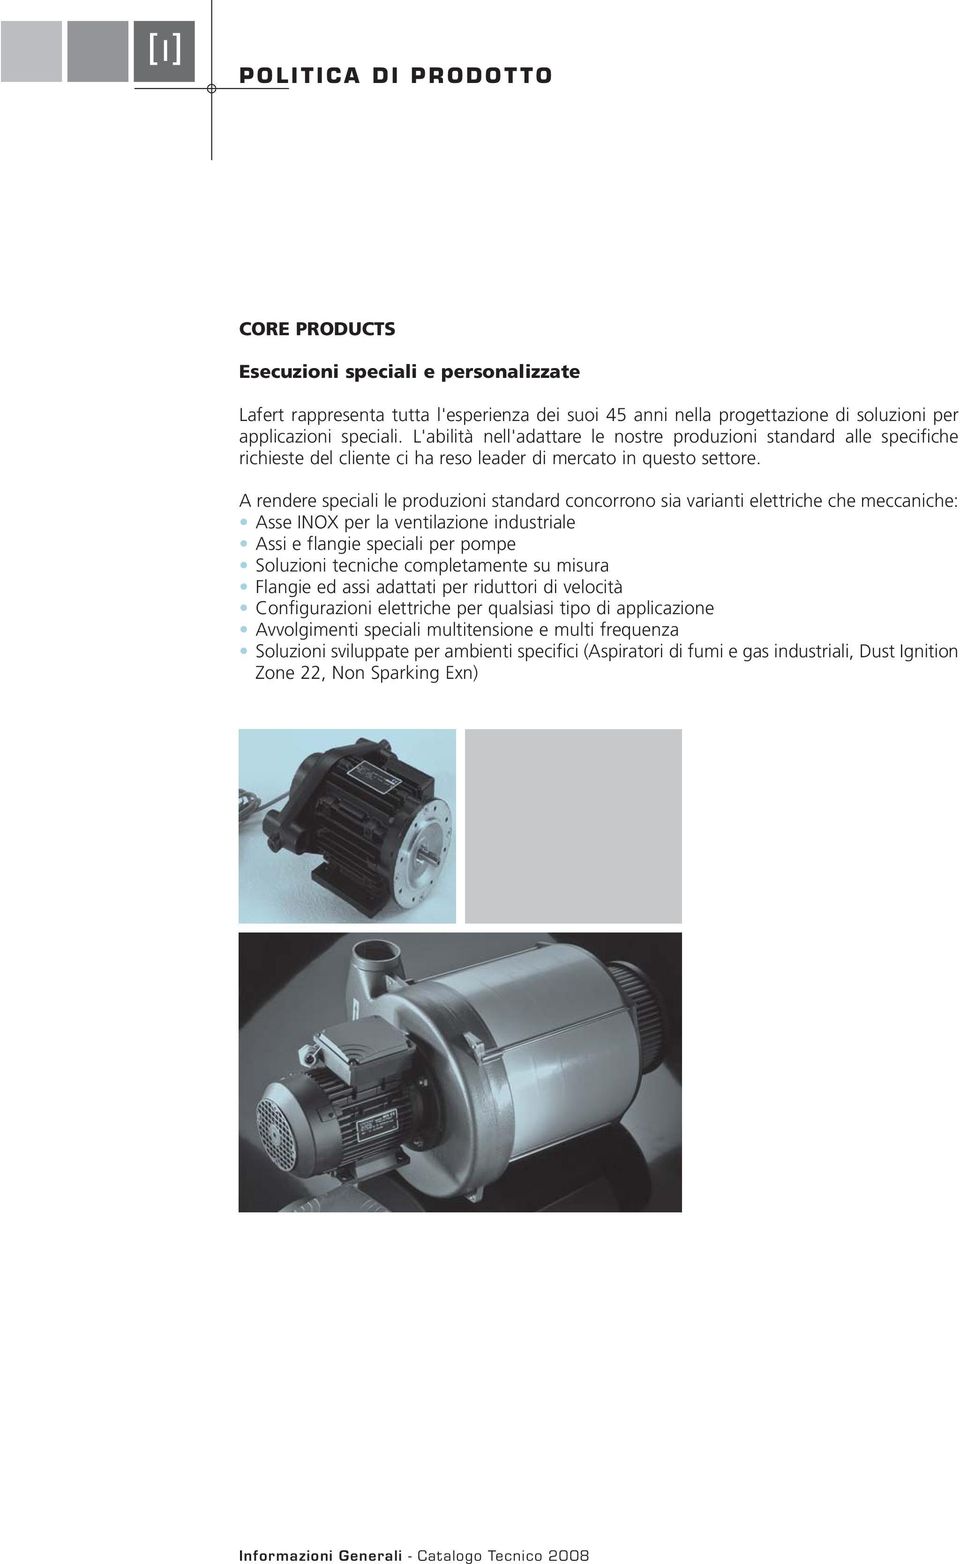 A rendere speciali le produzioni standard concorrono sia varianti elettriche che meccaniche: Asse INOX per la ventilazione industriale Assi e flangie speciali per pompe Soluzioni tecniche